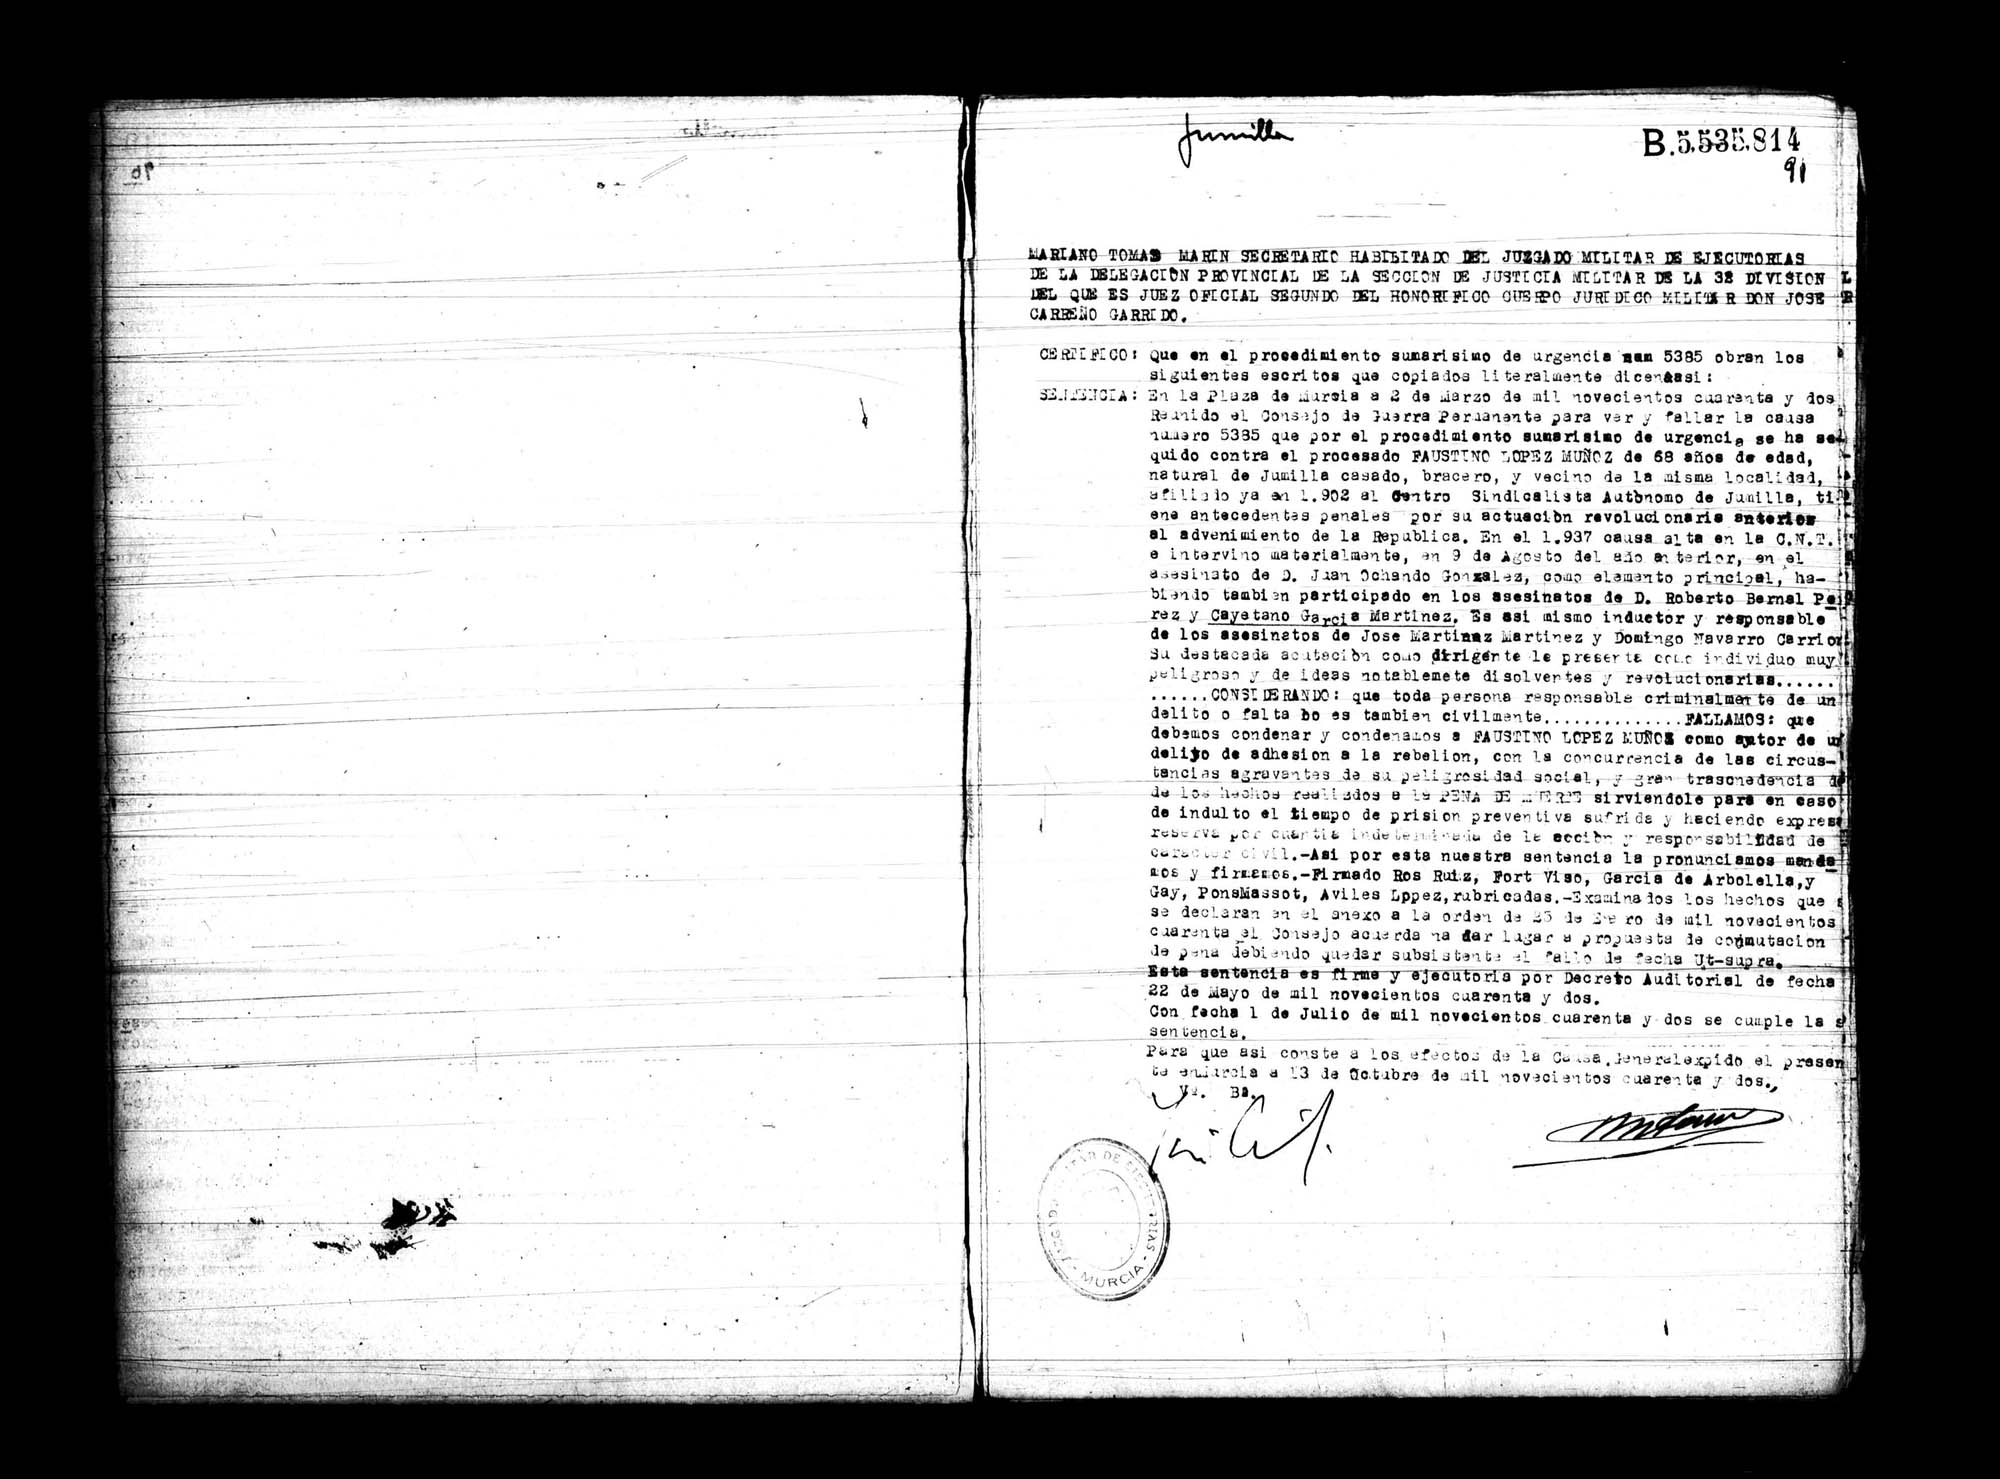 Certificado de la sentencia pronunciada contra Faustino López Muñoz, causa 5385, el 2 de marzo de 1942 en Murcia.